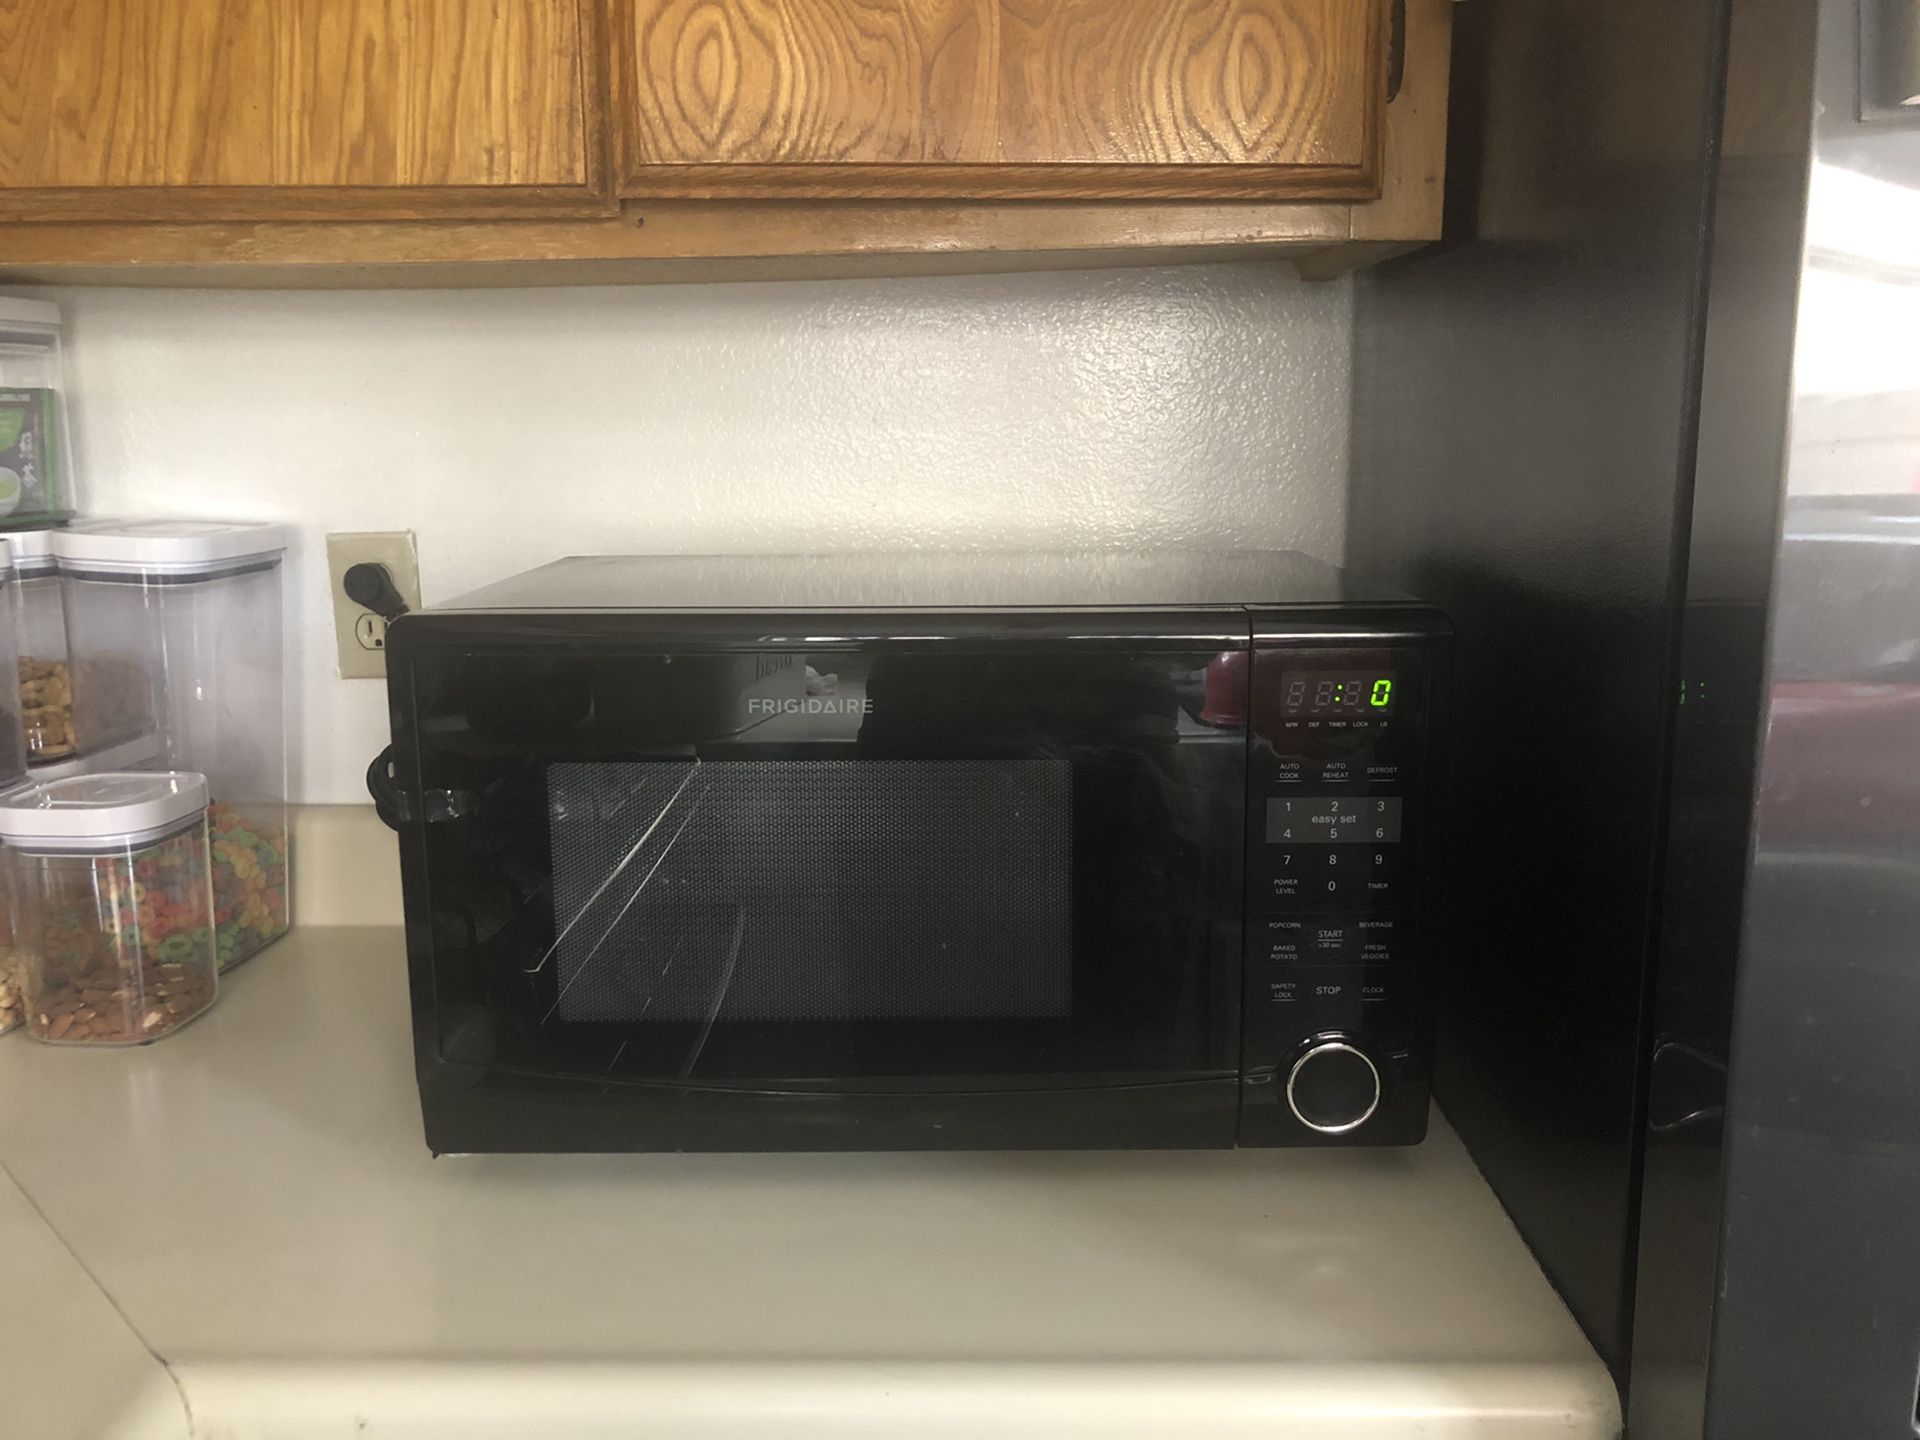 Frigidaire microwave 1.1 cu ft